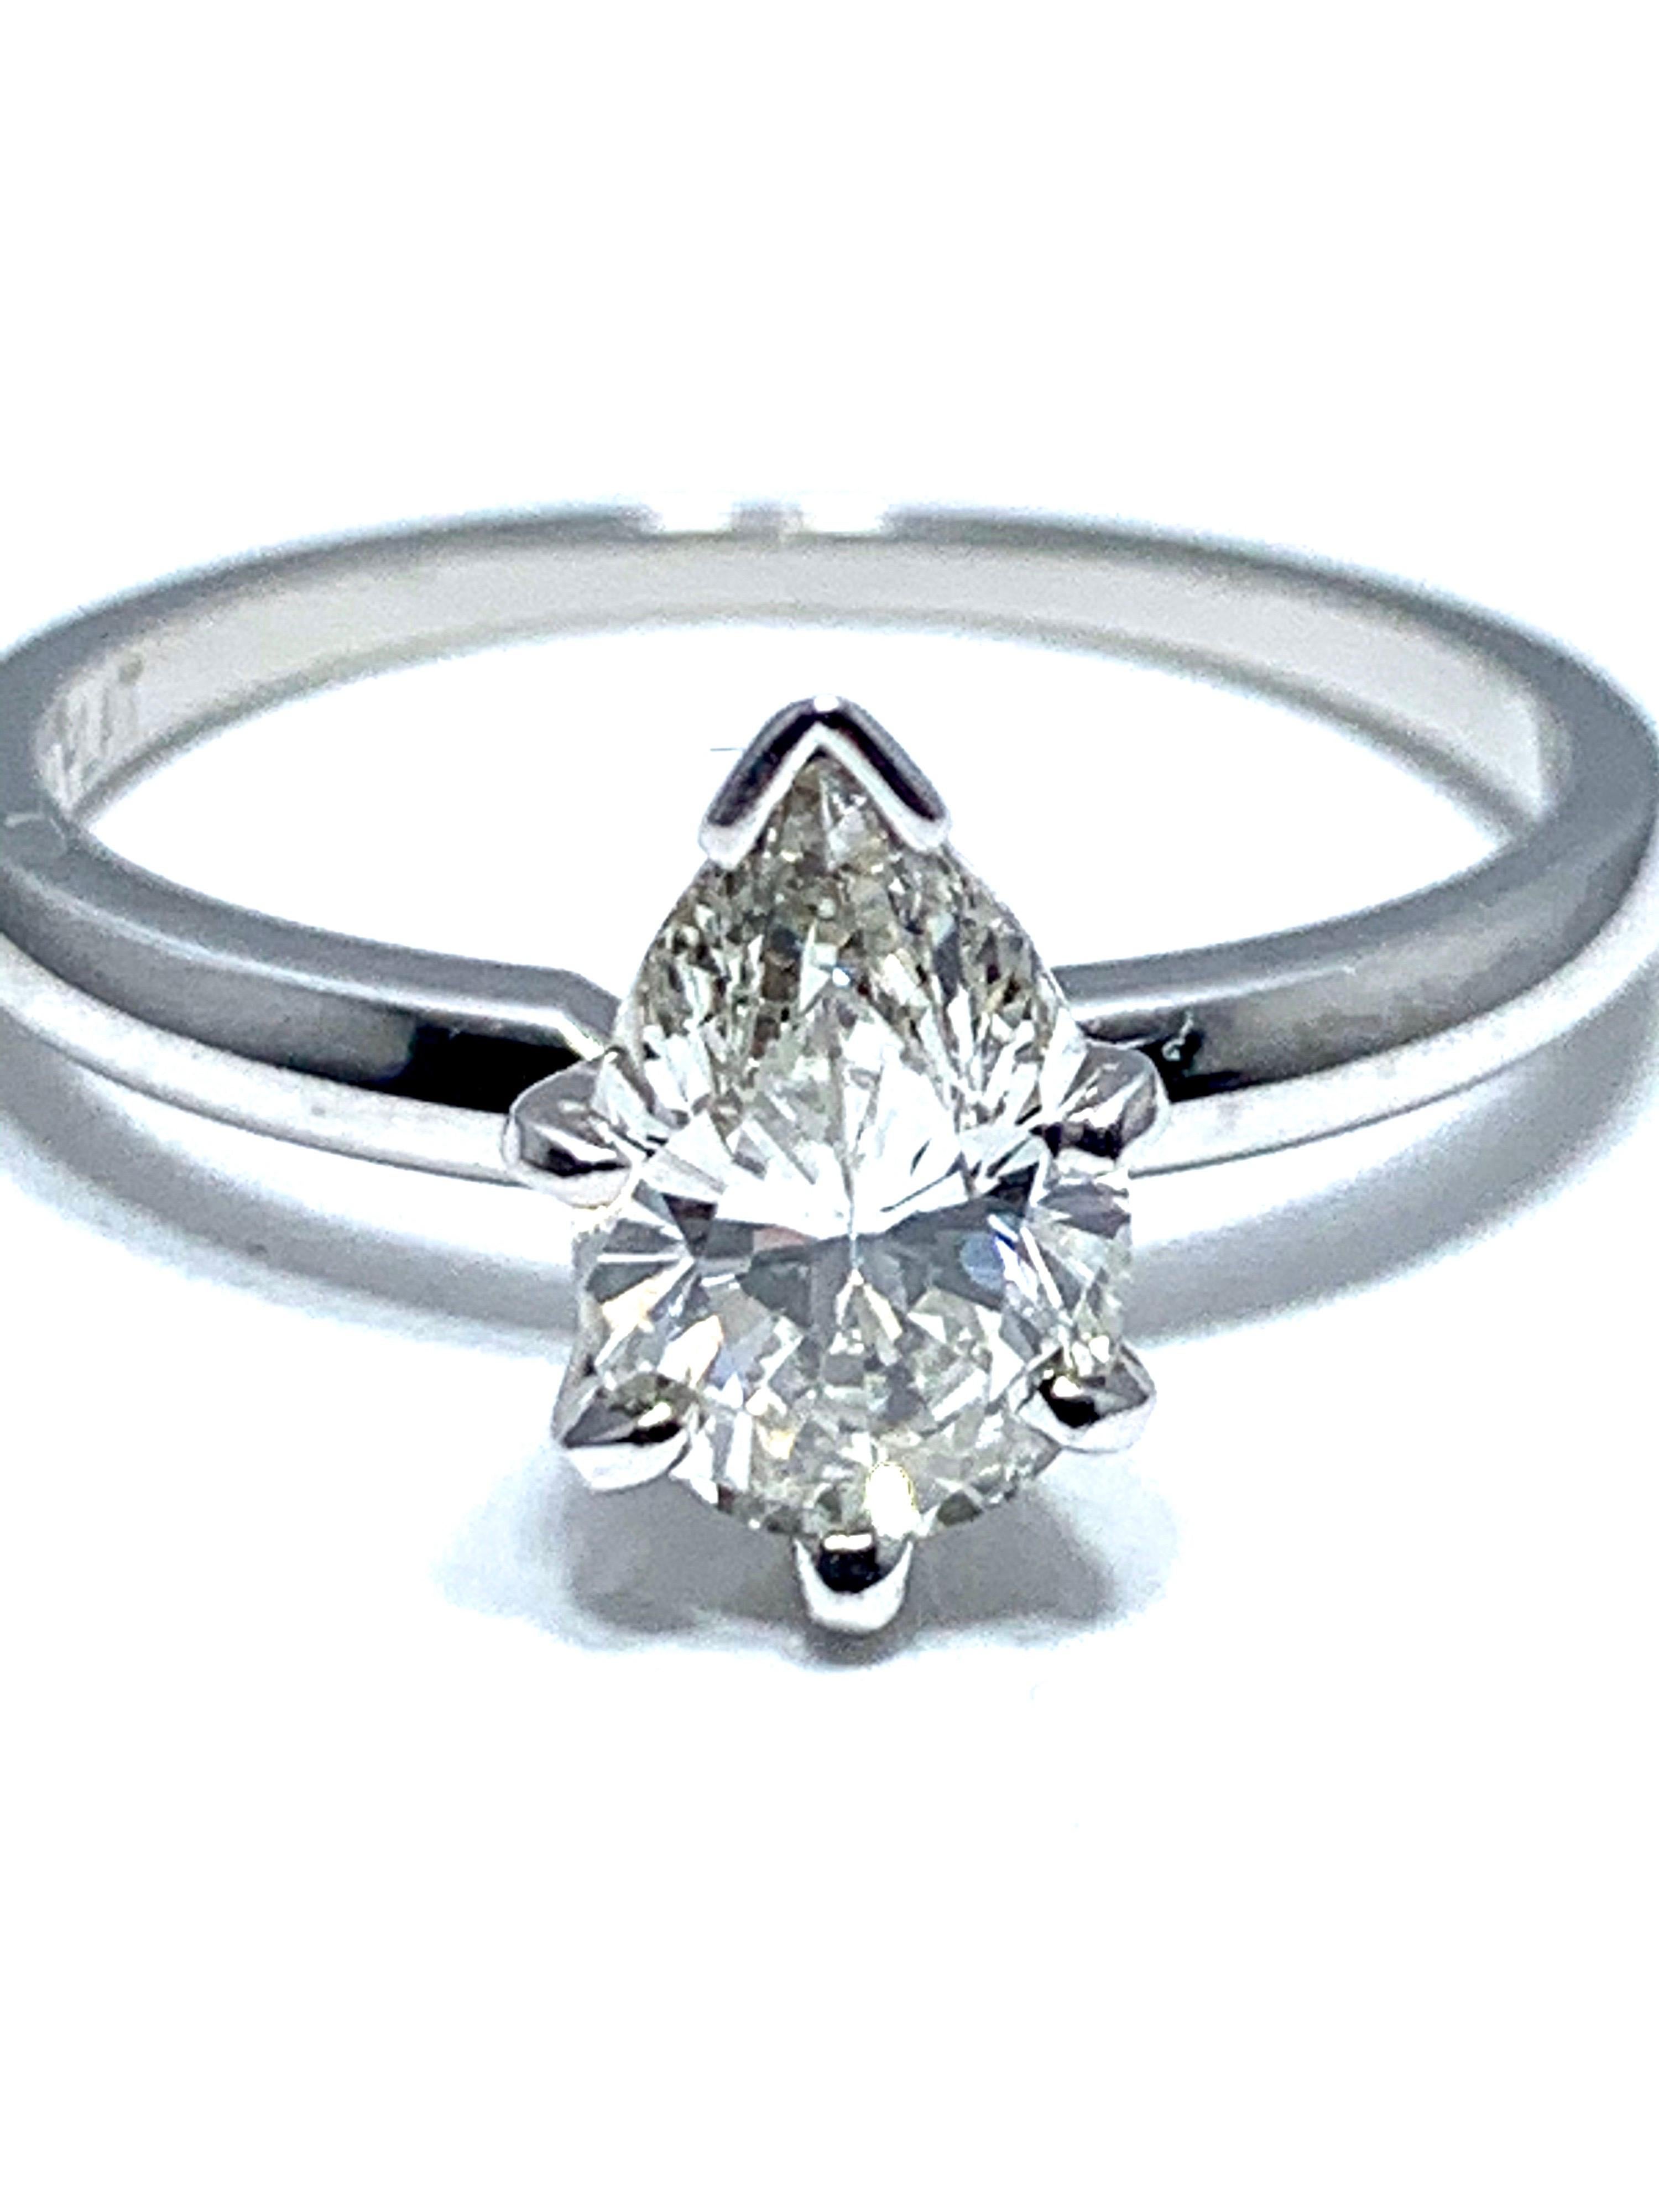 Une bague de fiançailles en diamant brillant en forme de poire de 1,02 carat.  Le diamant central est serti dans une tête à six griffes en platine sur une tige en platine polie.    Le diamant central est classé par le GIA comme étant de couleur J,